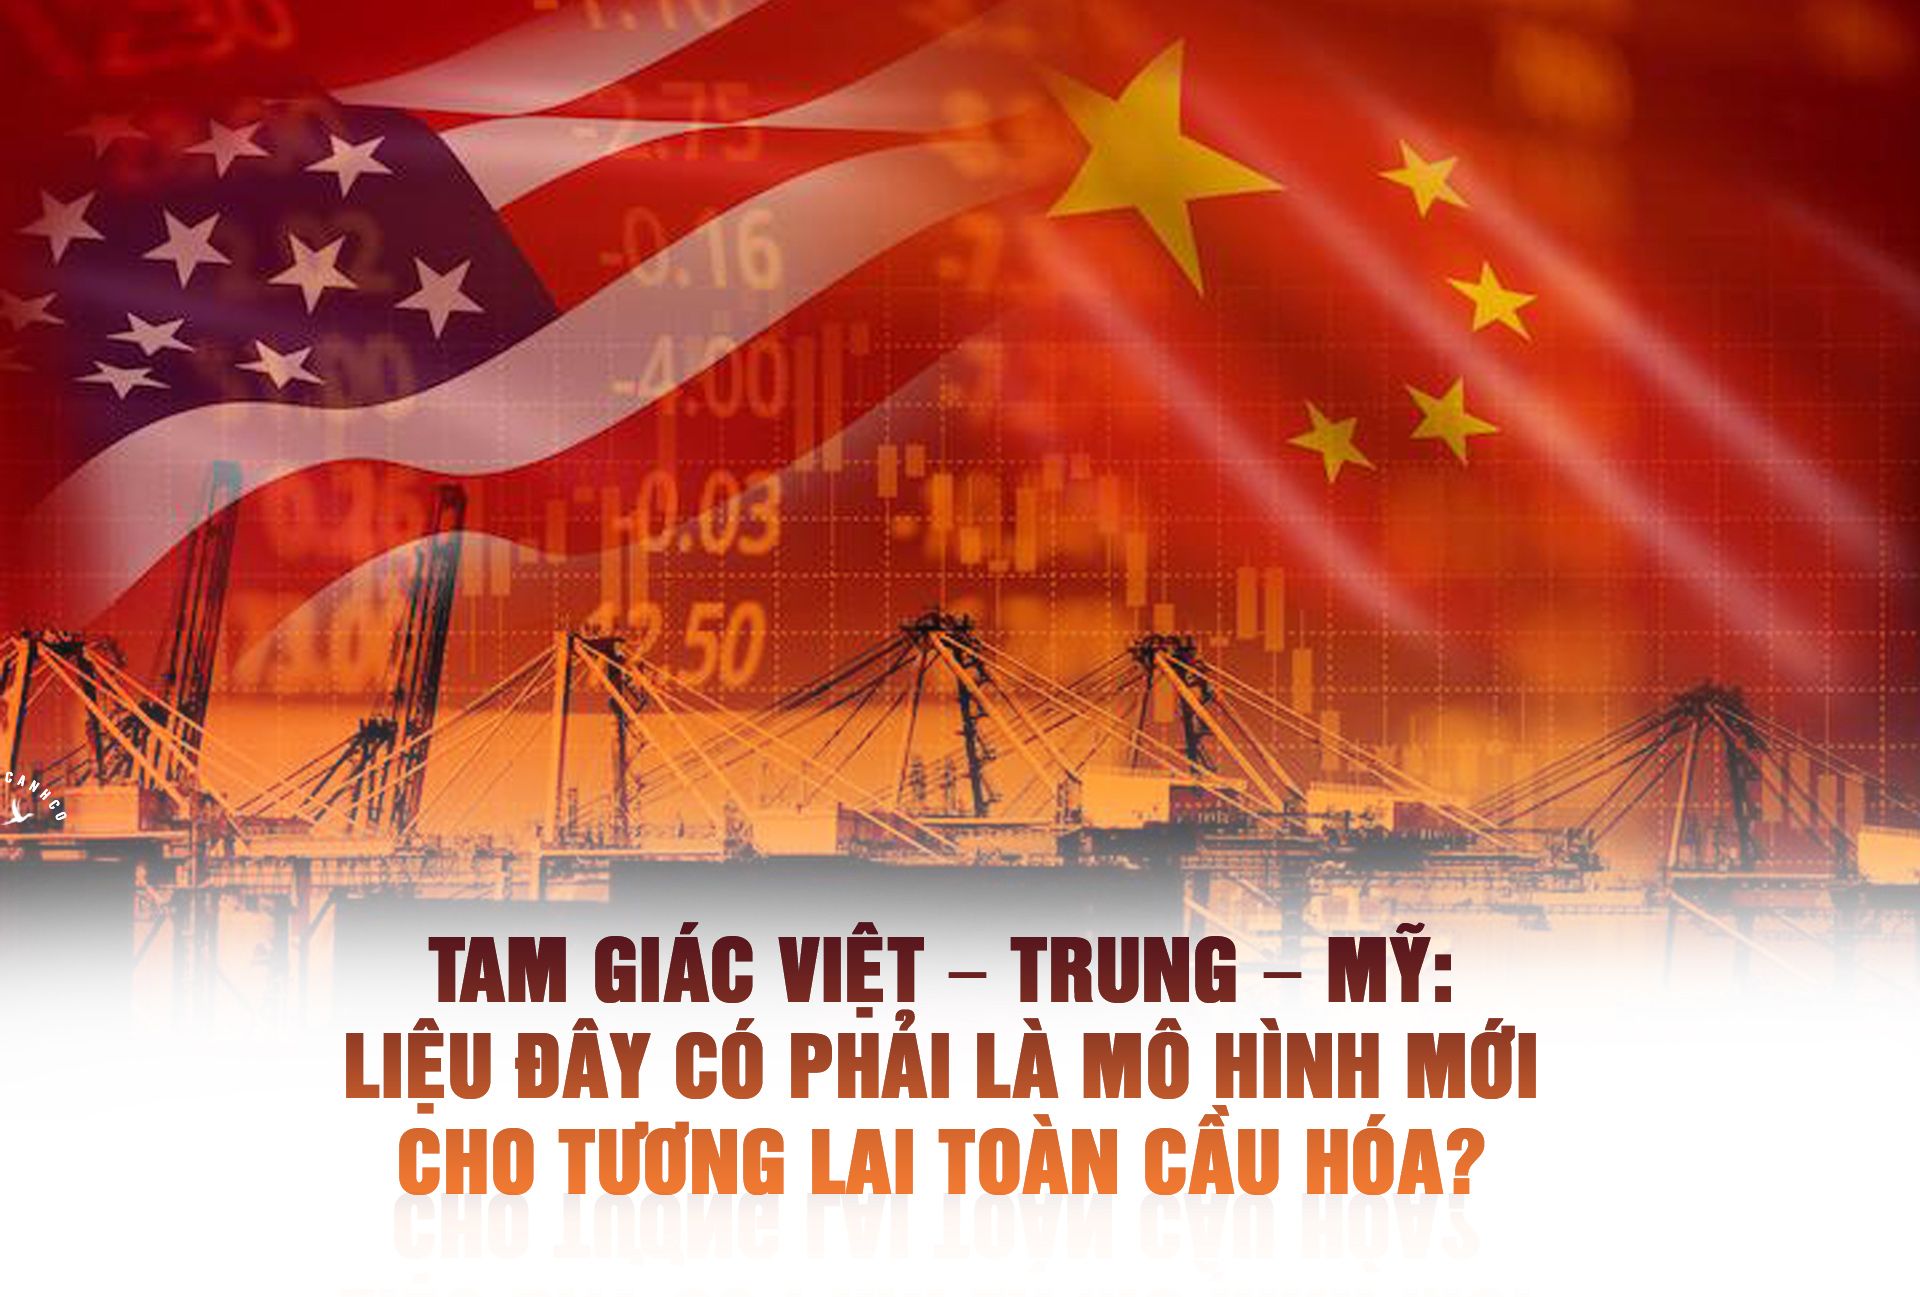 Tam giác Việt – Trung – Mỹ: Liệu đây có phải là mô hình mới cho tương lai toàn cầu hóa?